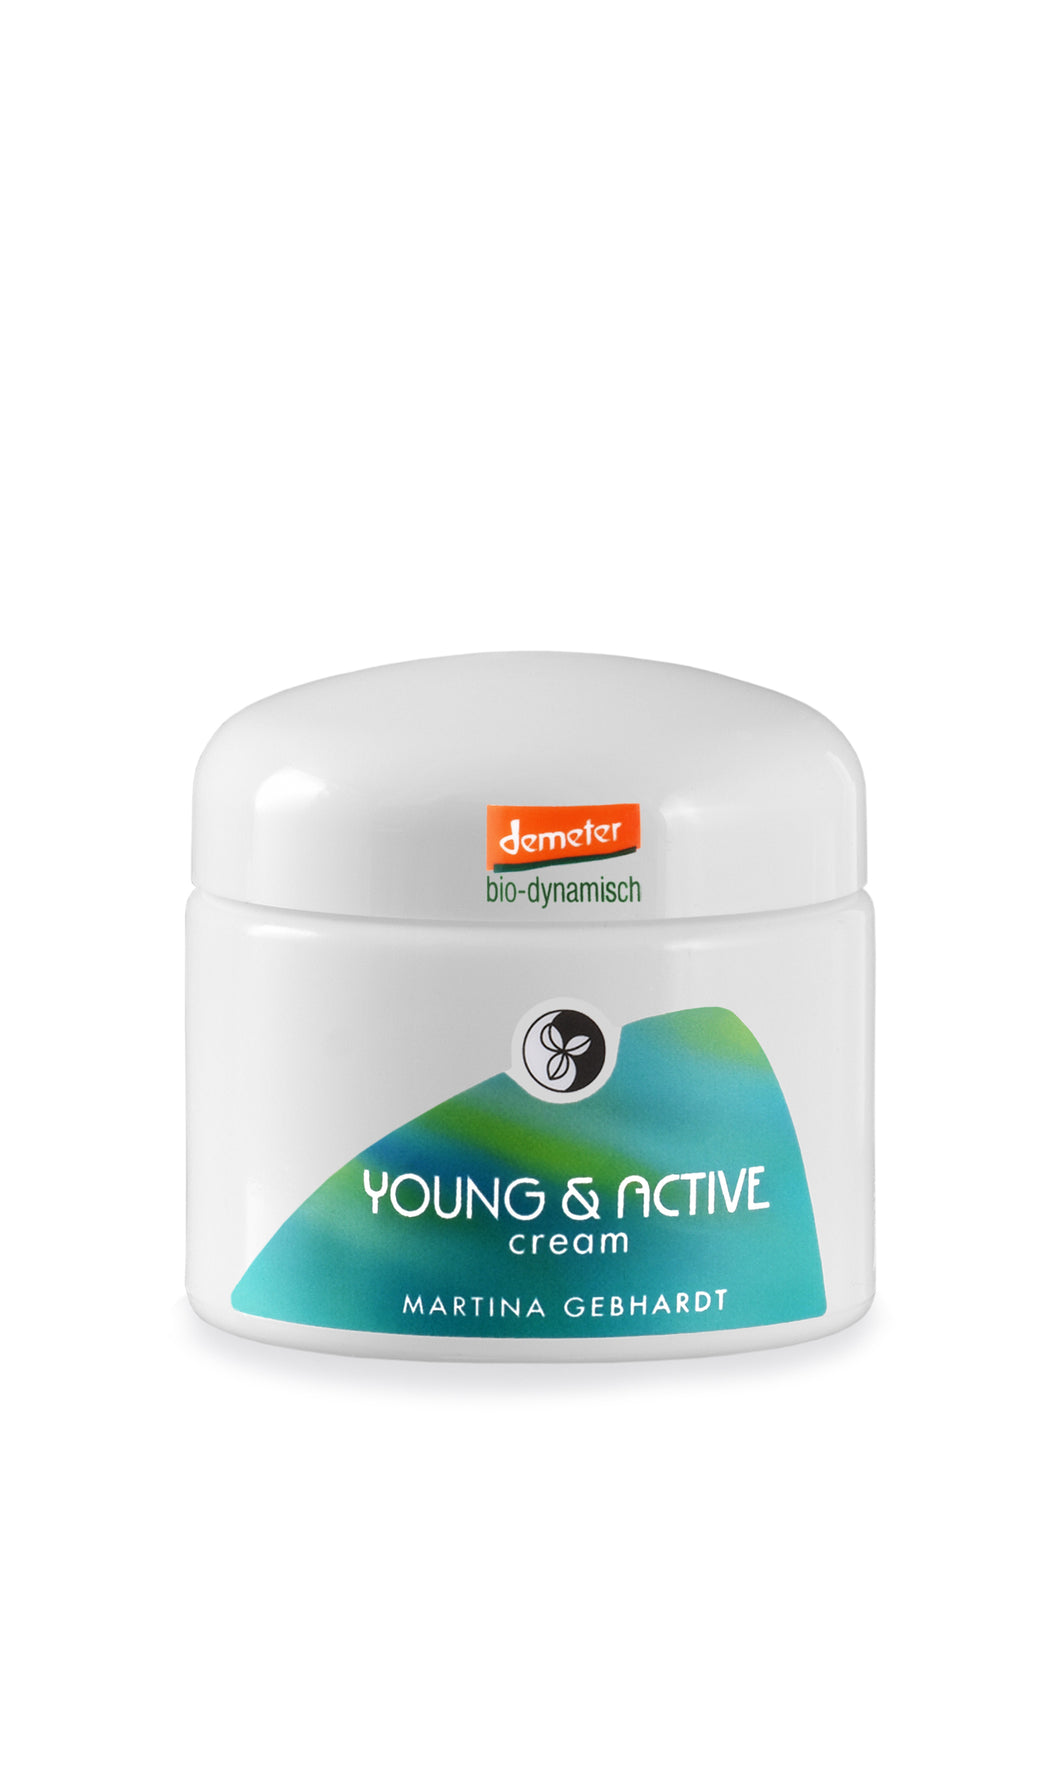 YOUNG & ACTIVE cream 50ml, DEMETER, Martina Gebhardt 